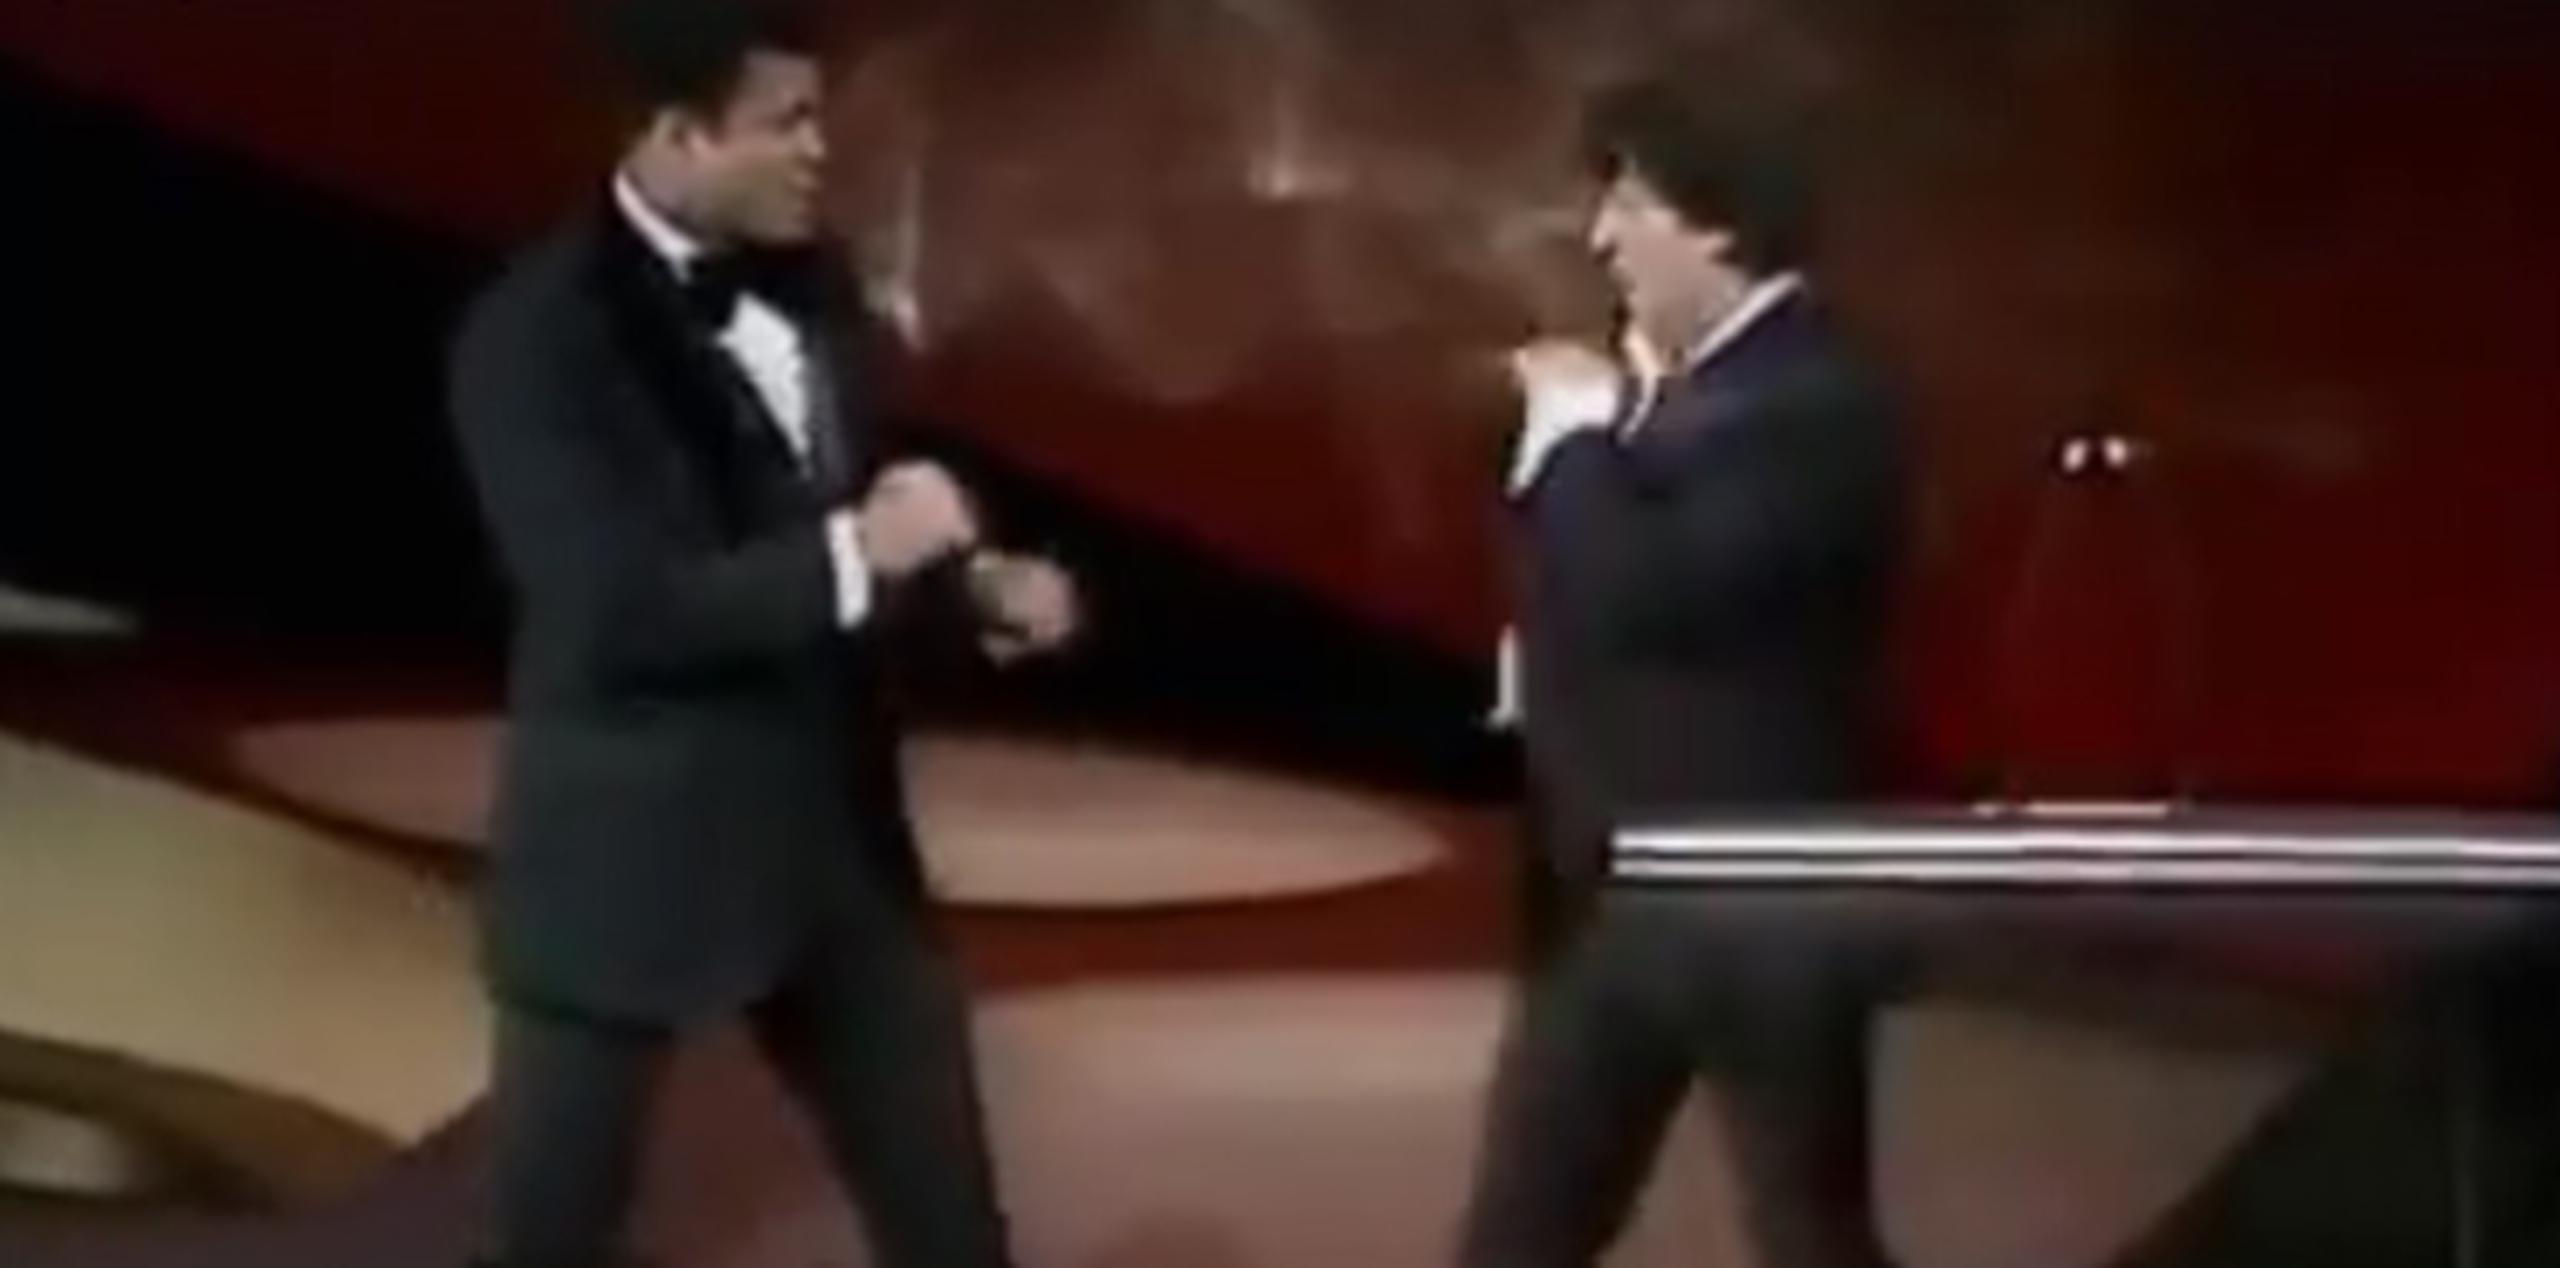 Ali y el actor hicieron ademanes de una pelea en tarima. (Facebook)